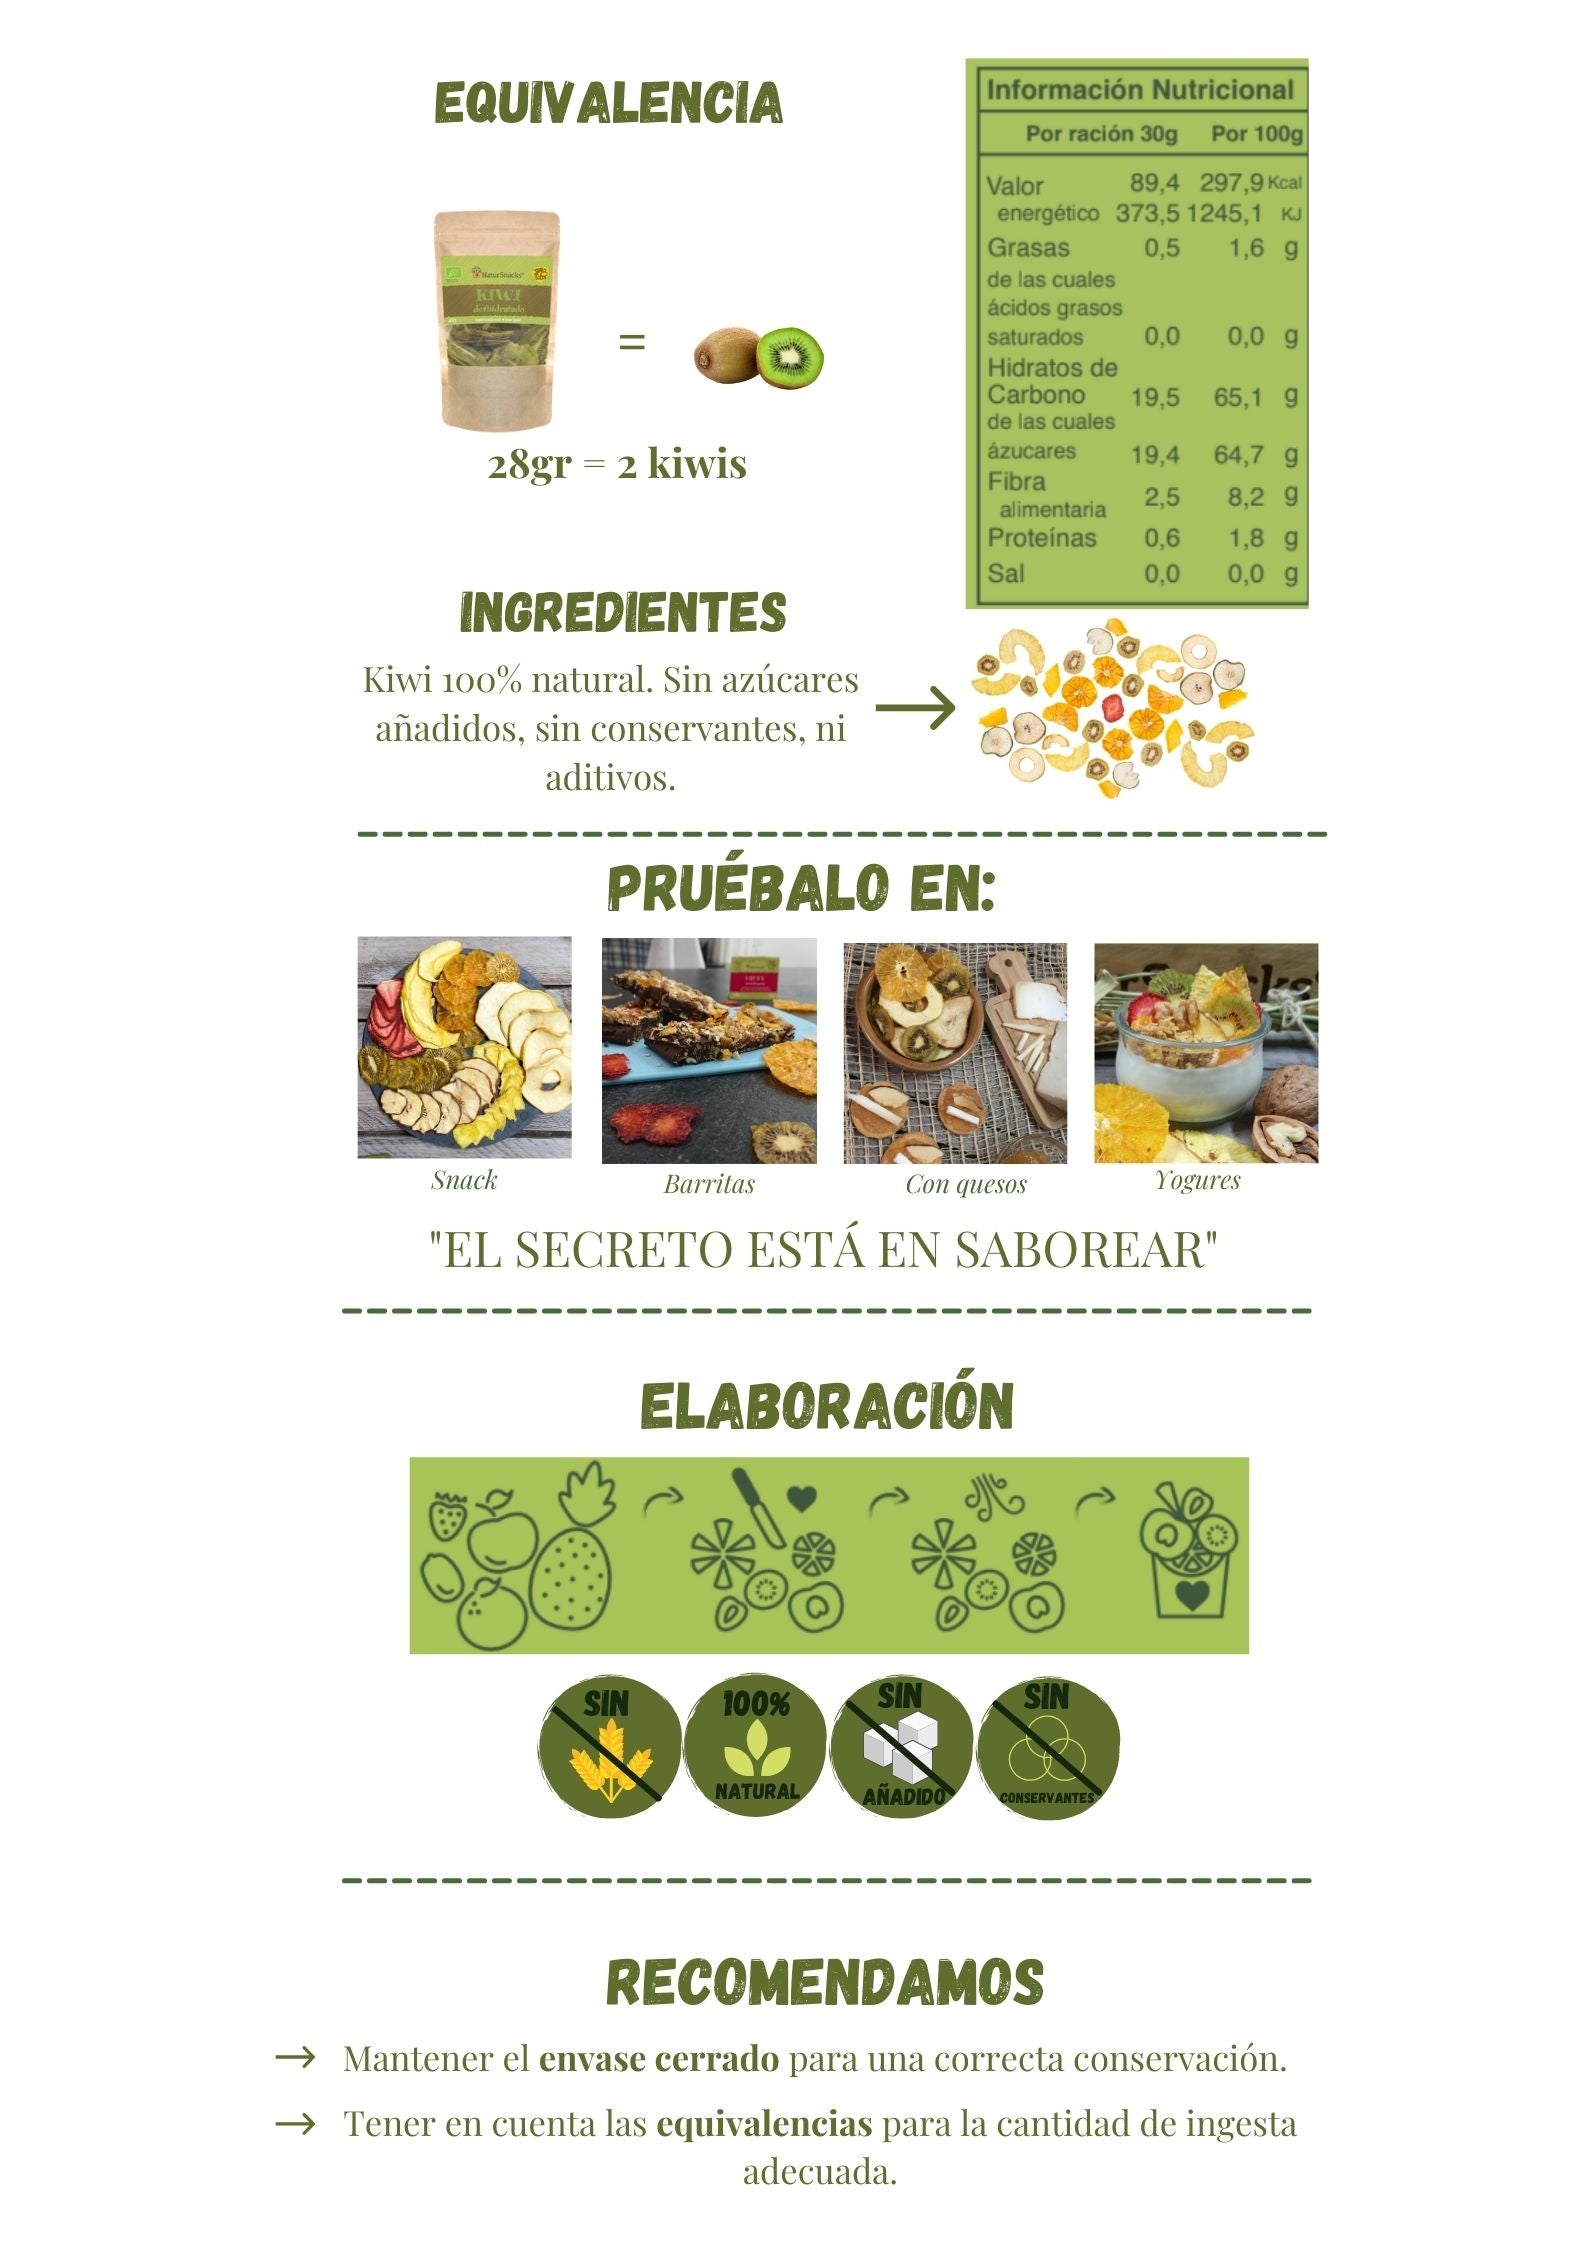 Equivalencias kiwi fresco y kiwi deshidratado, 28 gramos de kiwi deshidratado equivalen a 2 kiwis frescos, tabla de información nutricional. Ingredientes kiwi 100% natural sin azúcares añadidos, sin conservantes ni aditivos. El secreto está en saborear. Conservar envase cerrado y consumir cantidad recomendada.